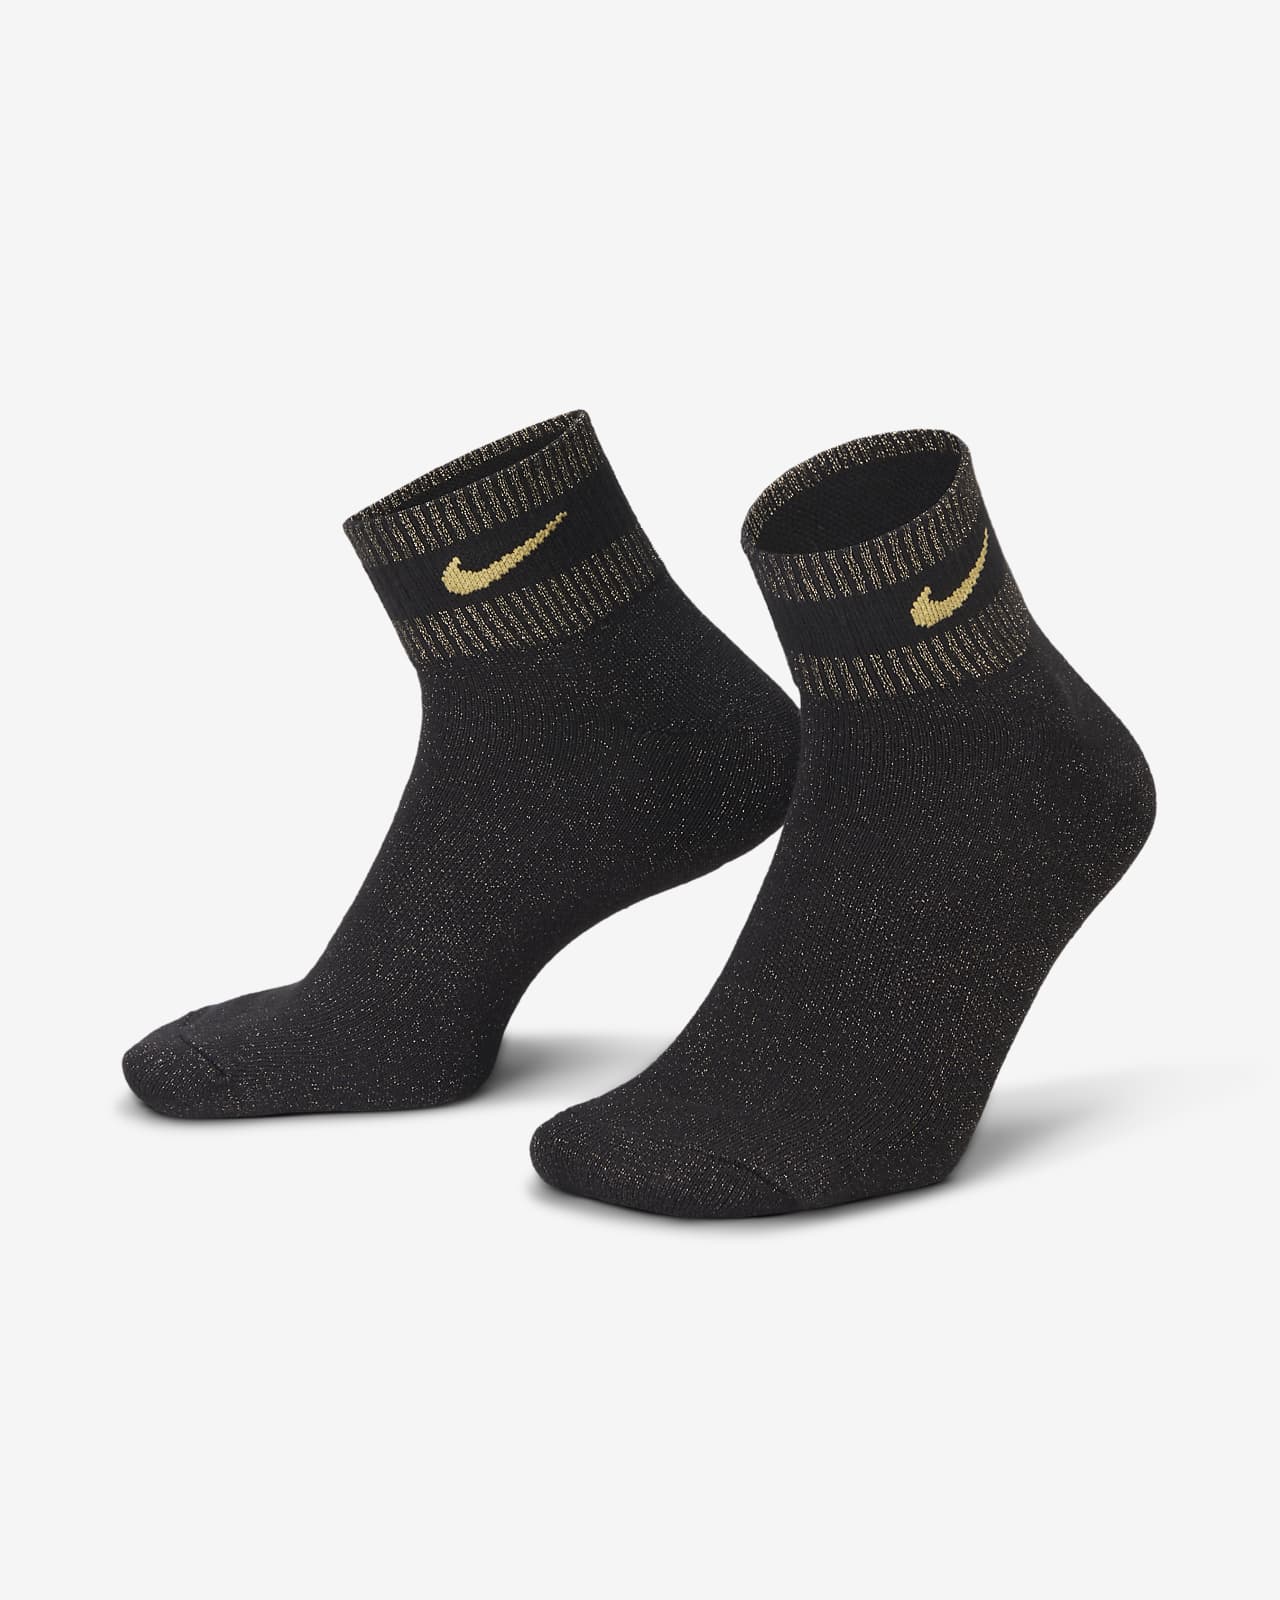 Socquettes métallisées Nike Everyday Essentials (1 paire)